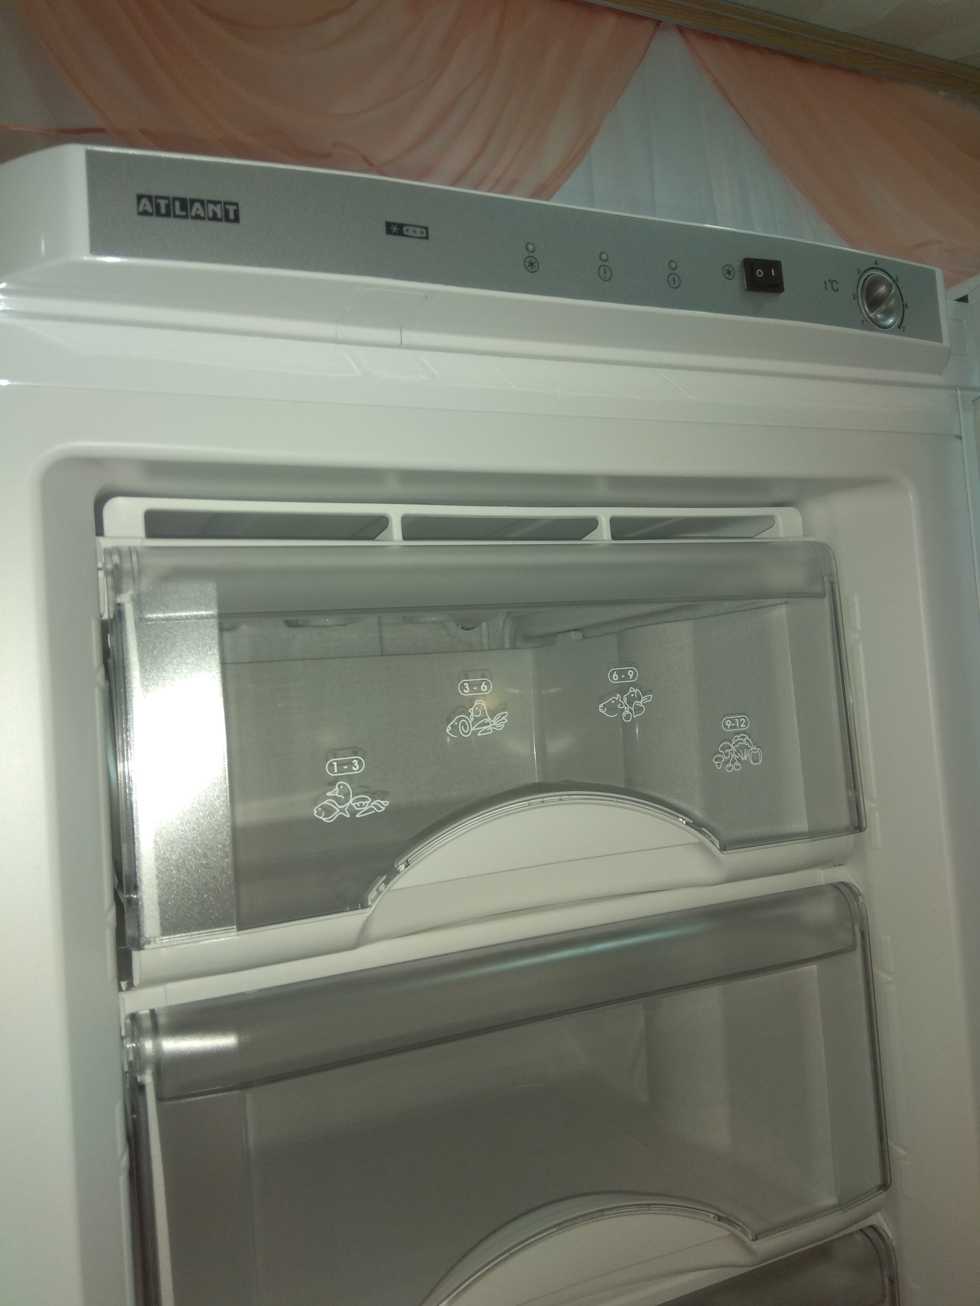 Морозильник atlant м 7204-100: камера, шкаф, отзывы, технические характеристики, инструкция, белый